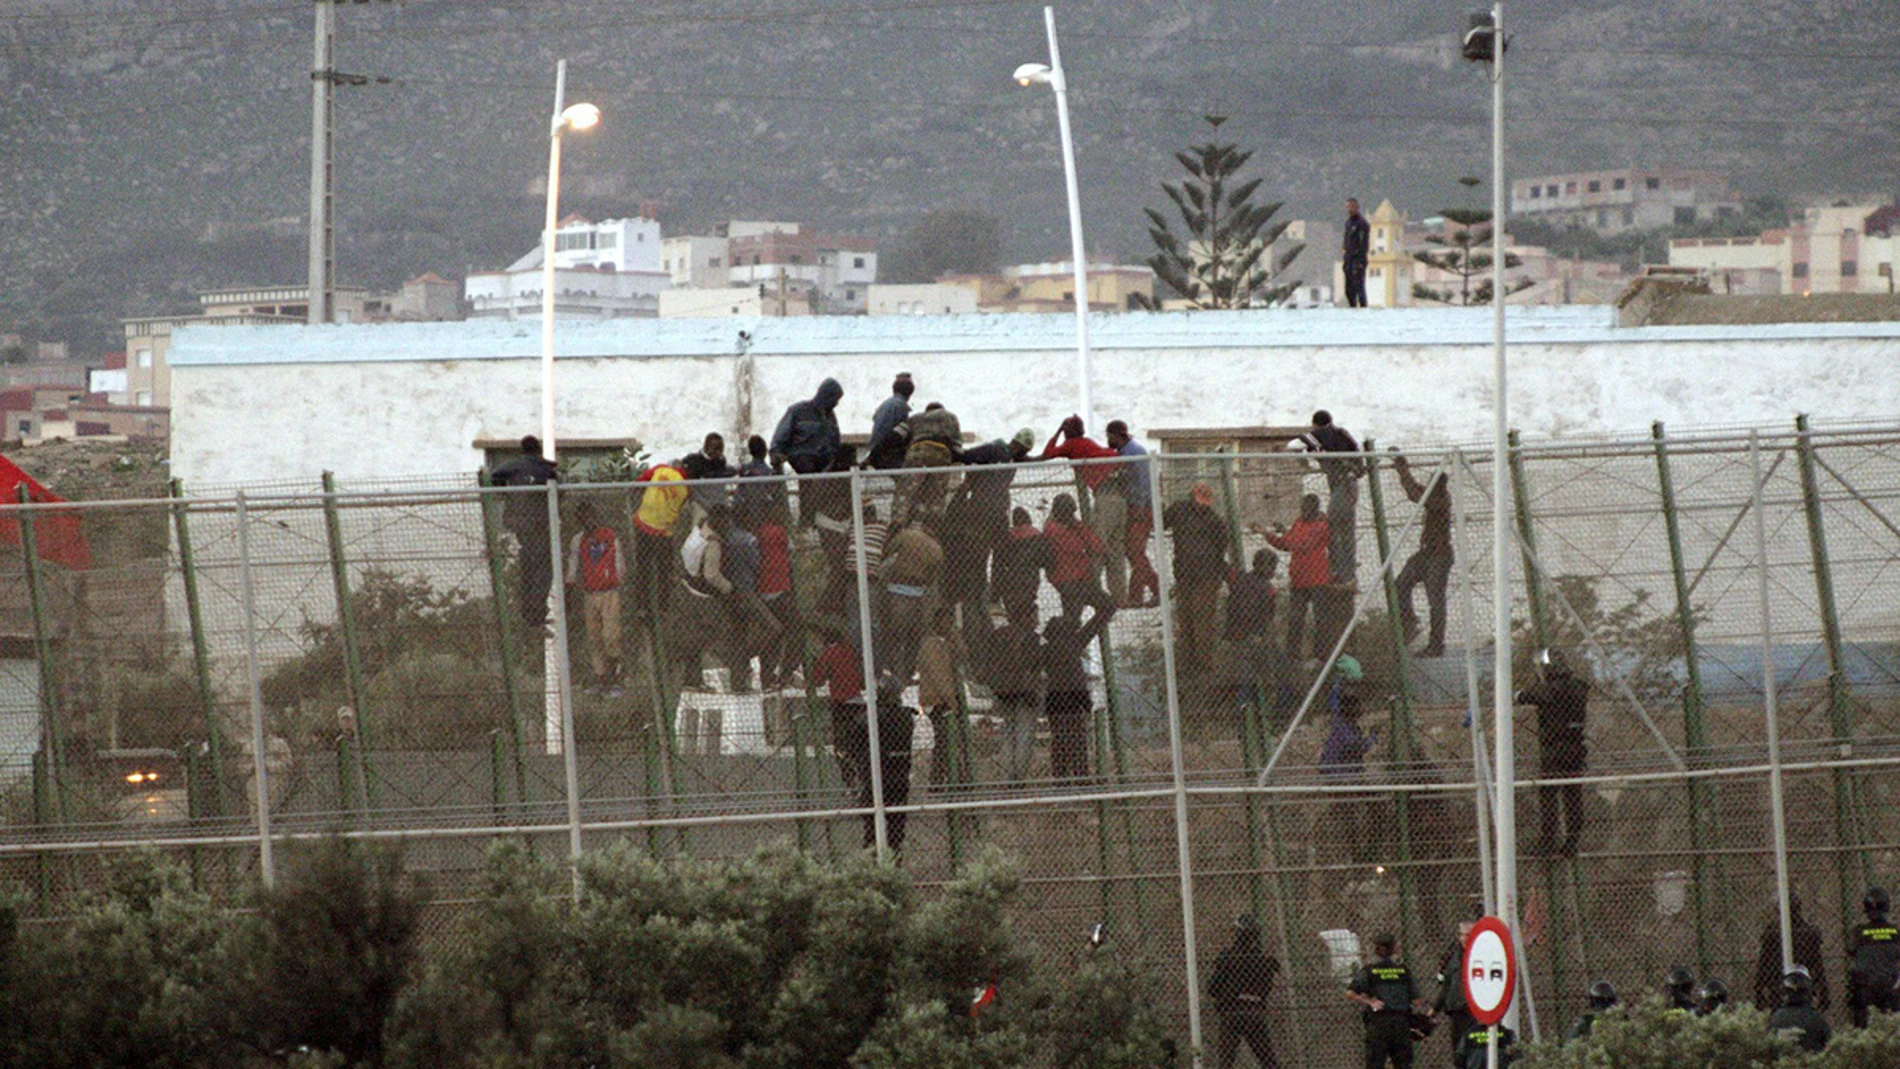 Alrededor de 30 inmigrantes subsaharianos permanecían en la valla que separa Melilla de Marruecos